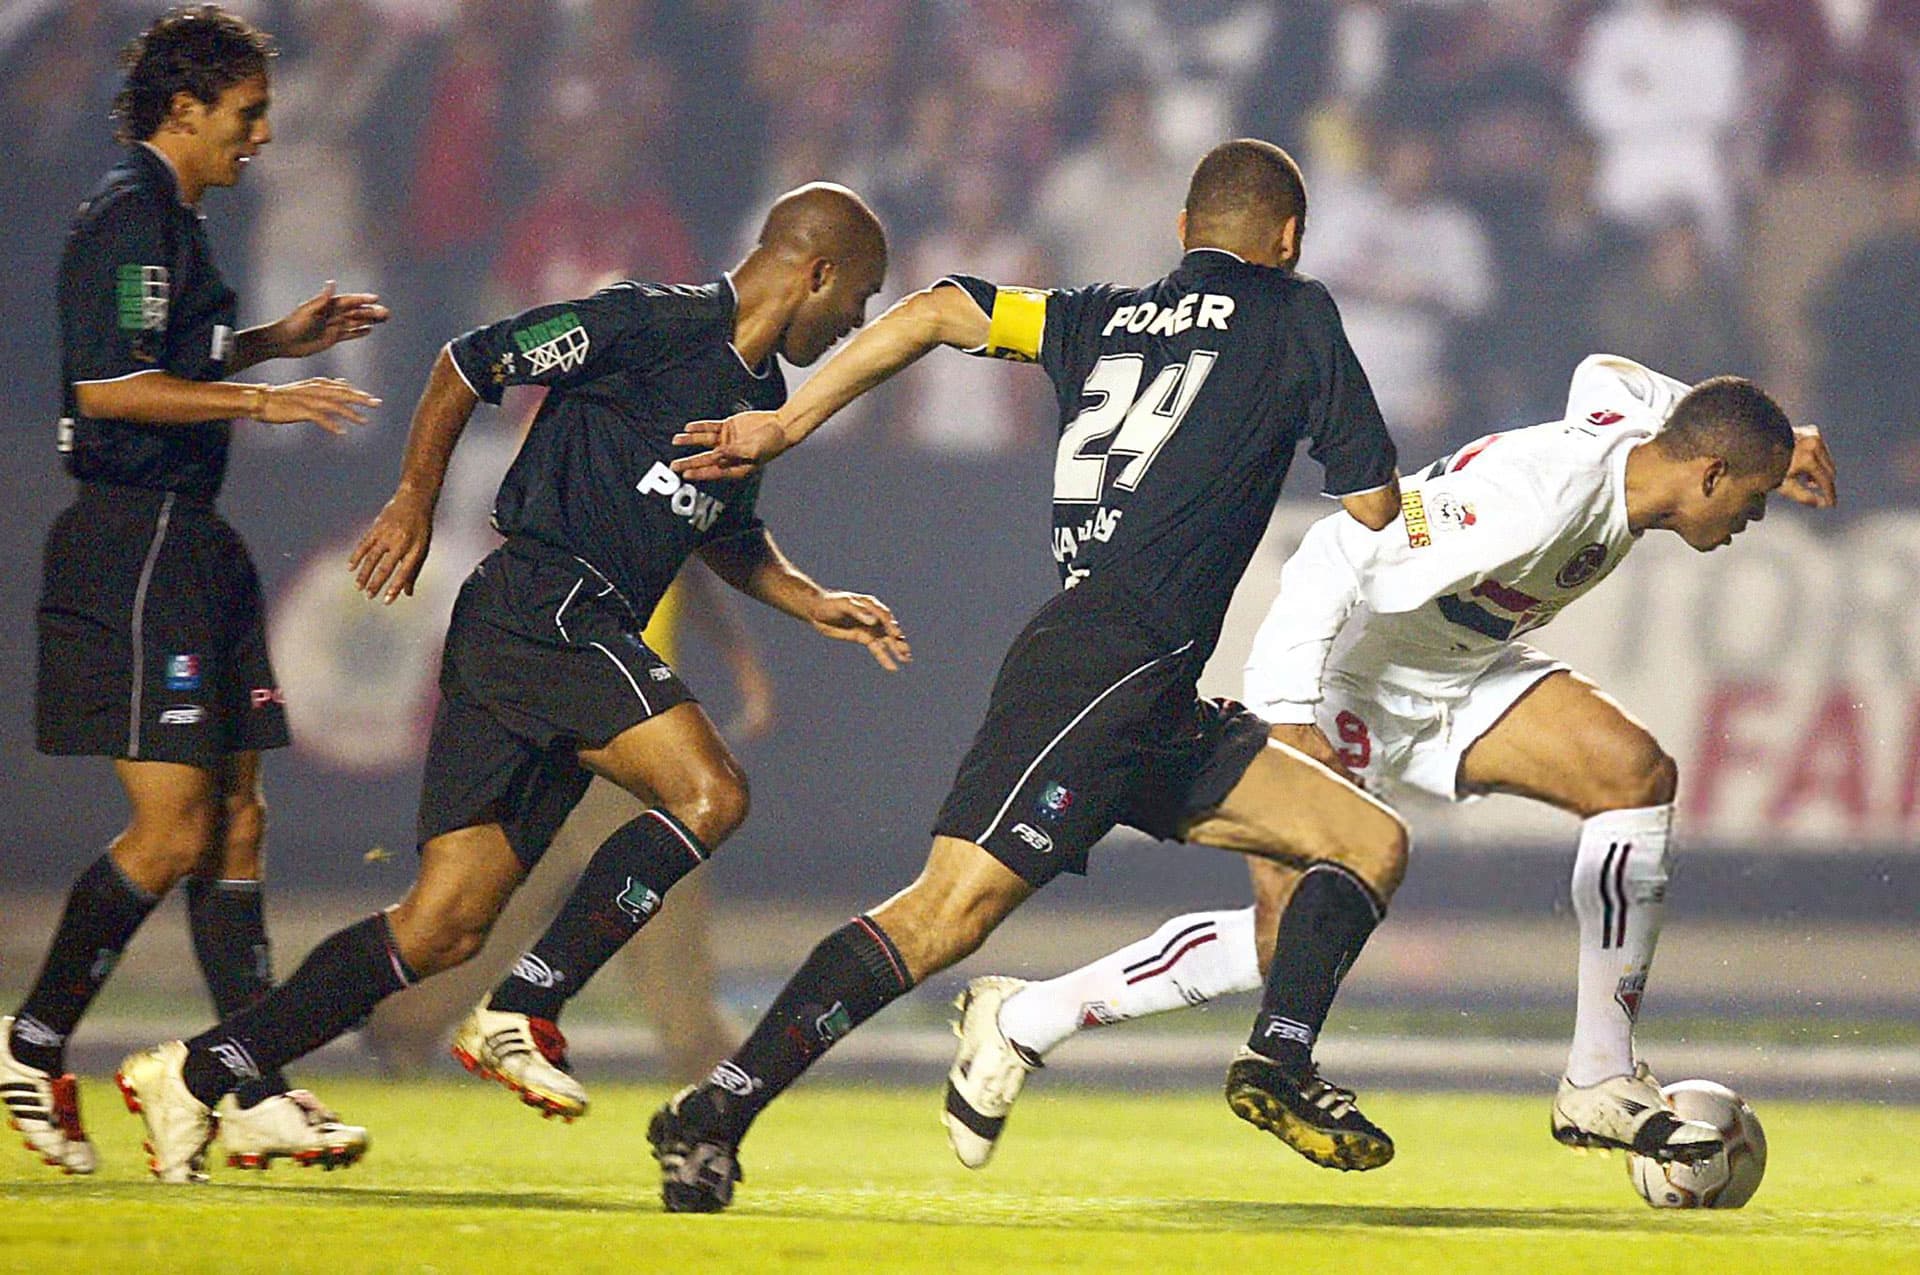 La eliminatoria entre Once Caldas y São Paulo sería una de las más emocionantes de aquella edición de la Copa Libertadores./ Vanderlei Almeida